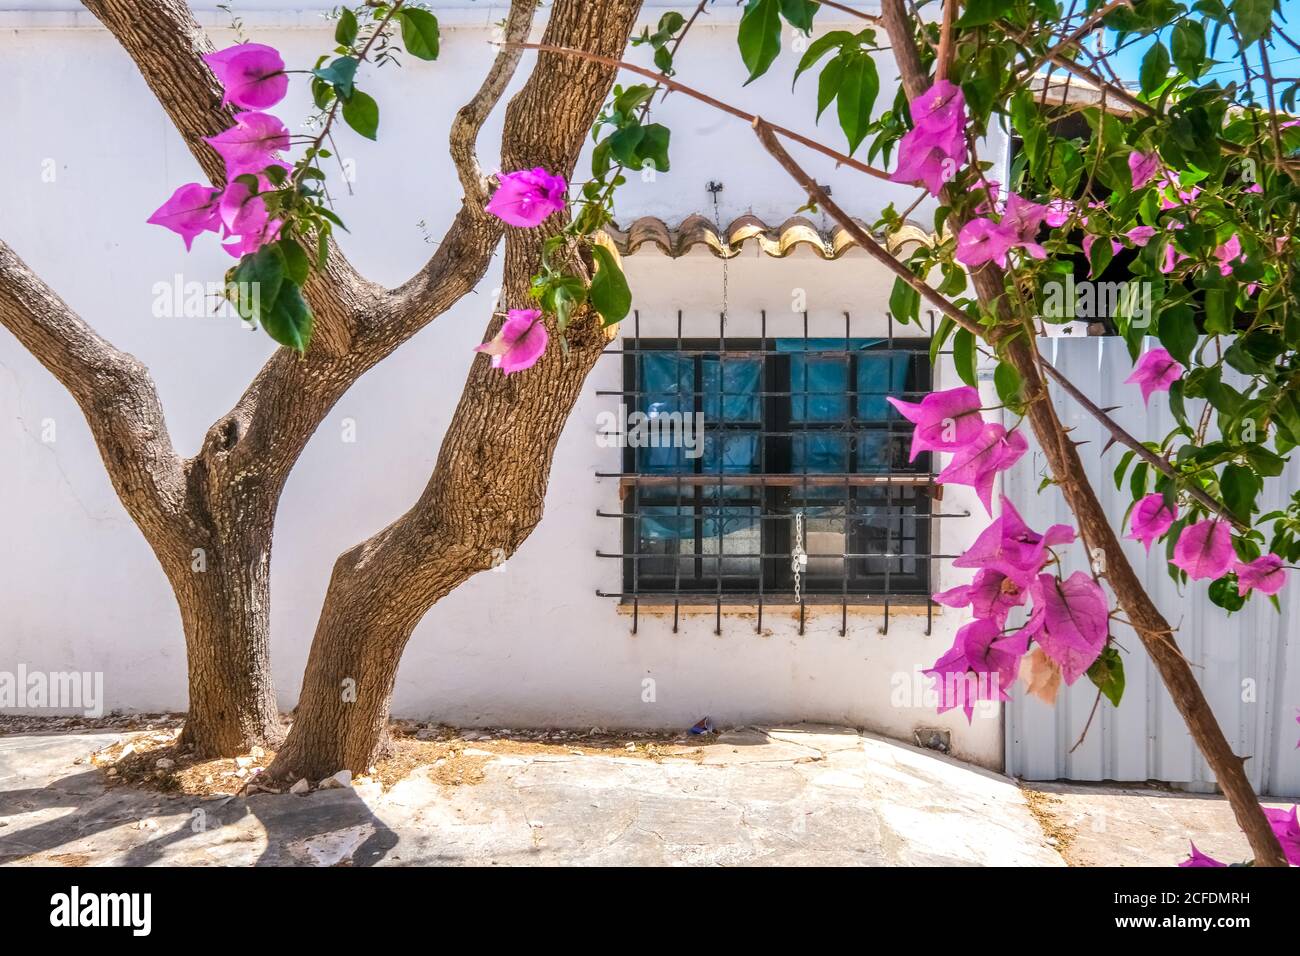 Uliveto e bouganvillea in fiore in un cortile posteriore nella località di Cala d'Or sulla costa sud-orientale di Maiorca. Finestra barrata, Santanyí, Foto Stock